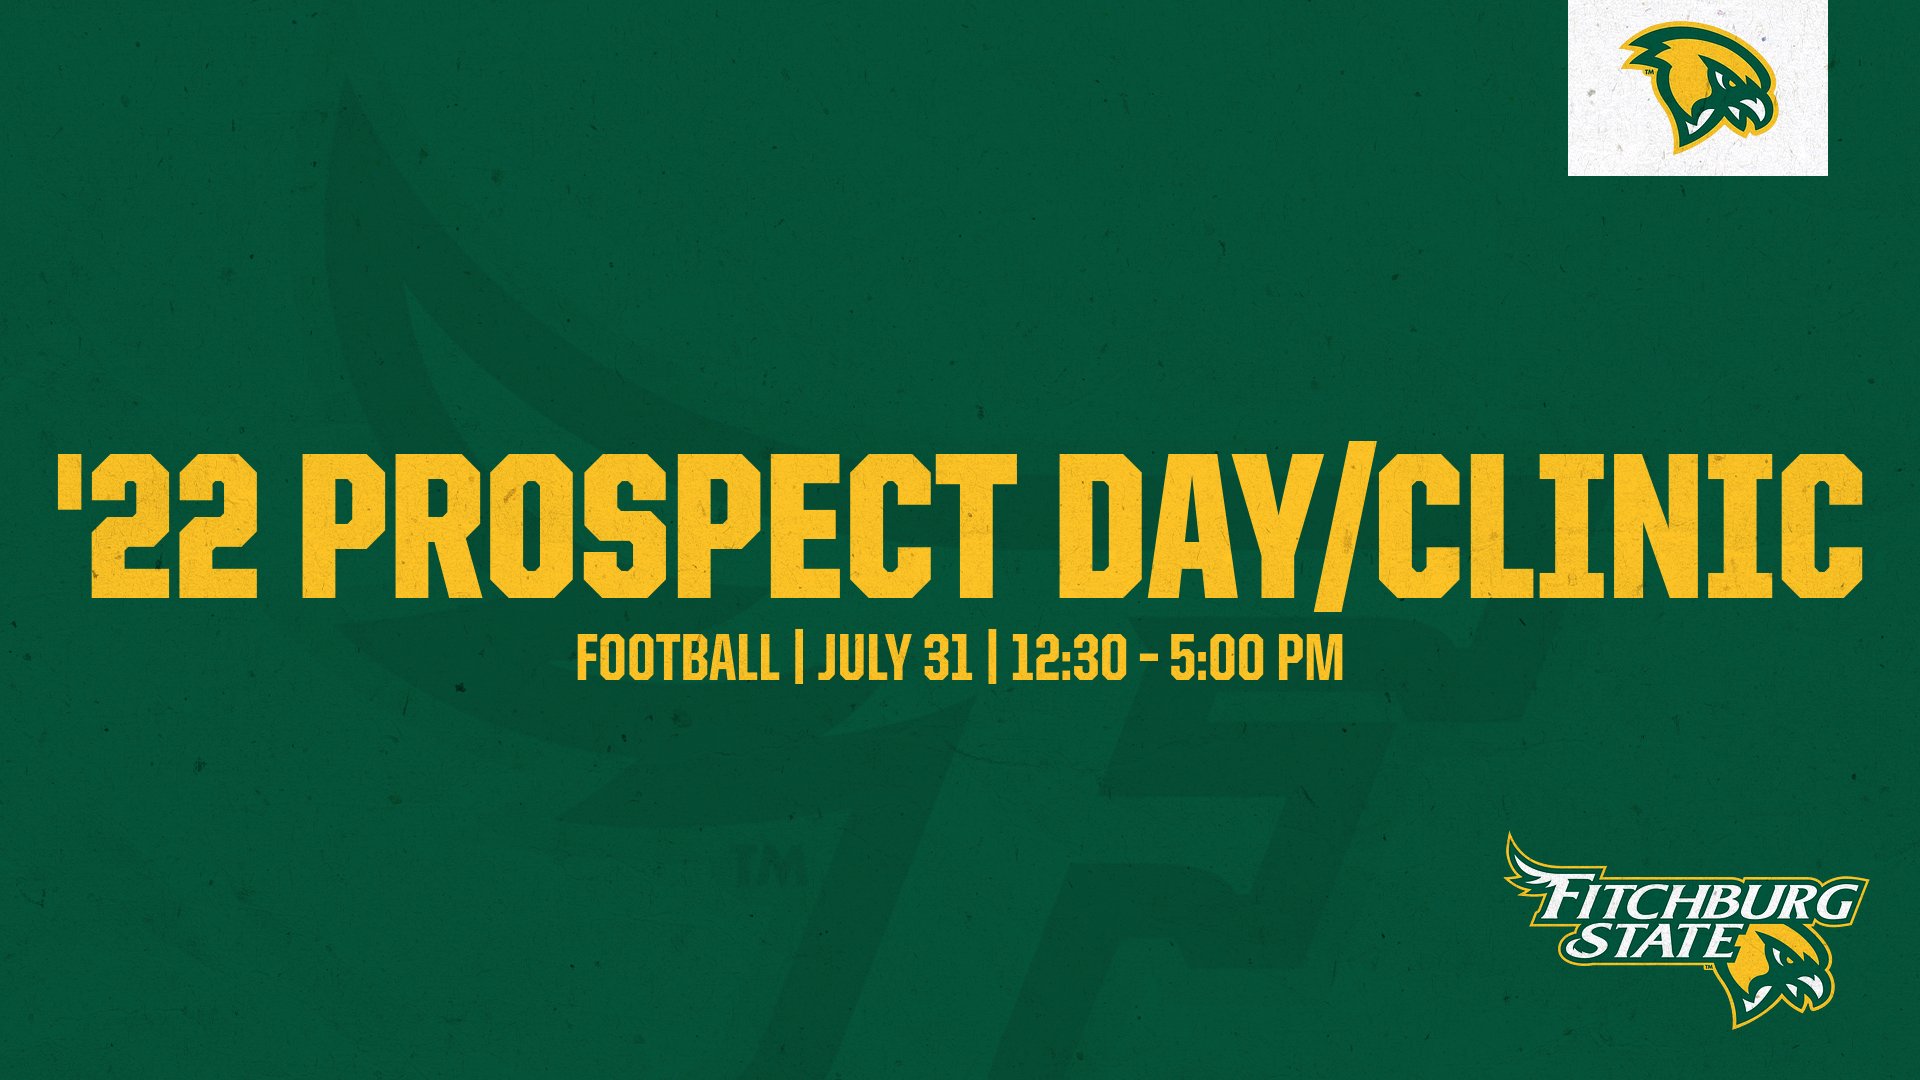 Football Announces '22 Prospect Day & Clinic